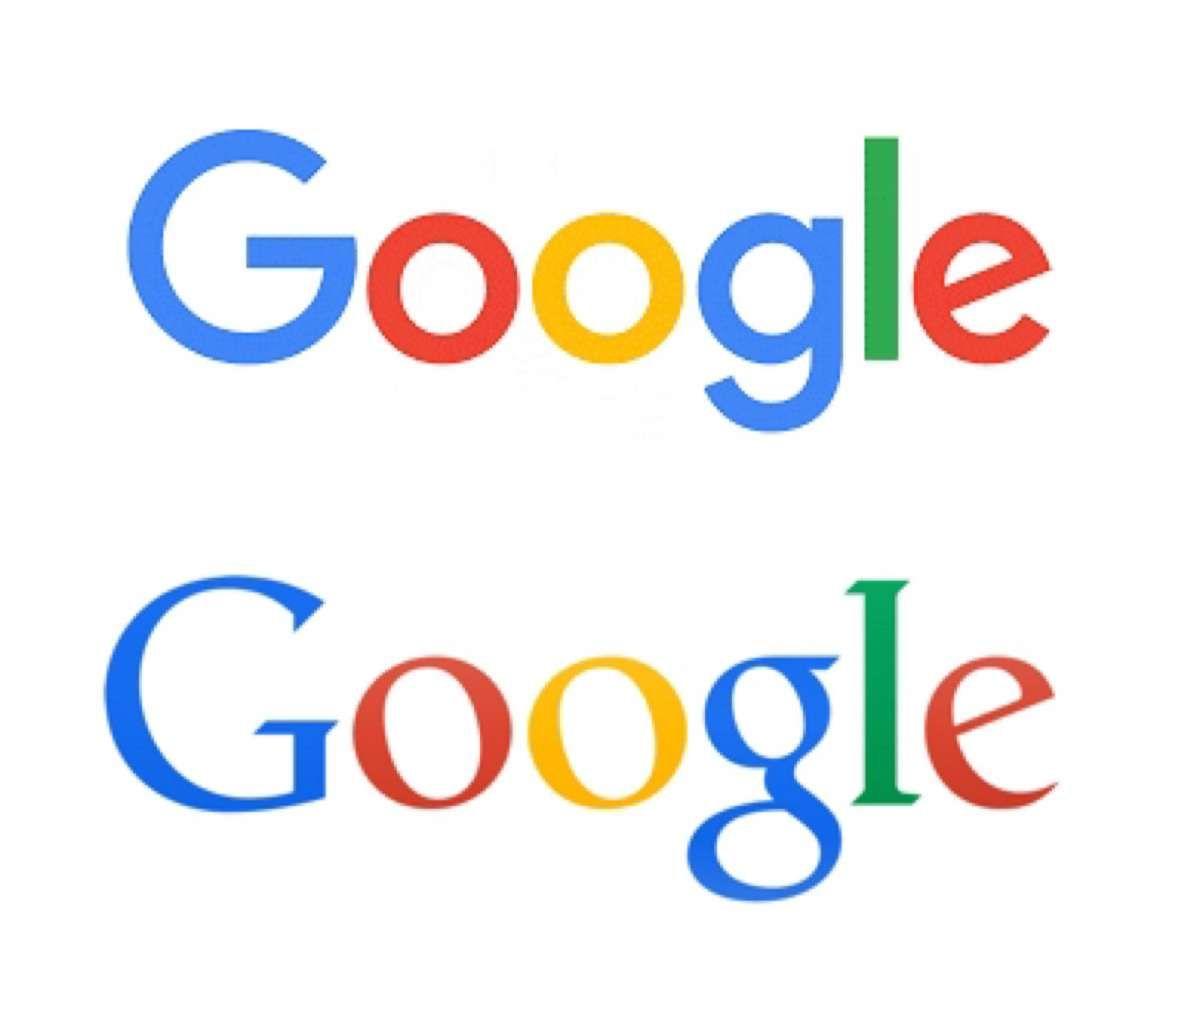 Old Google Logo - Google - New Logo vs. Old Logo